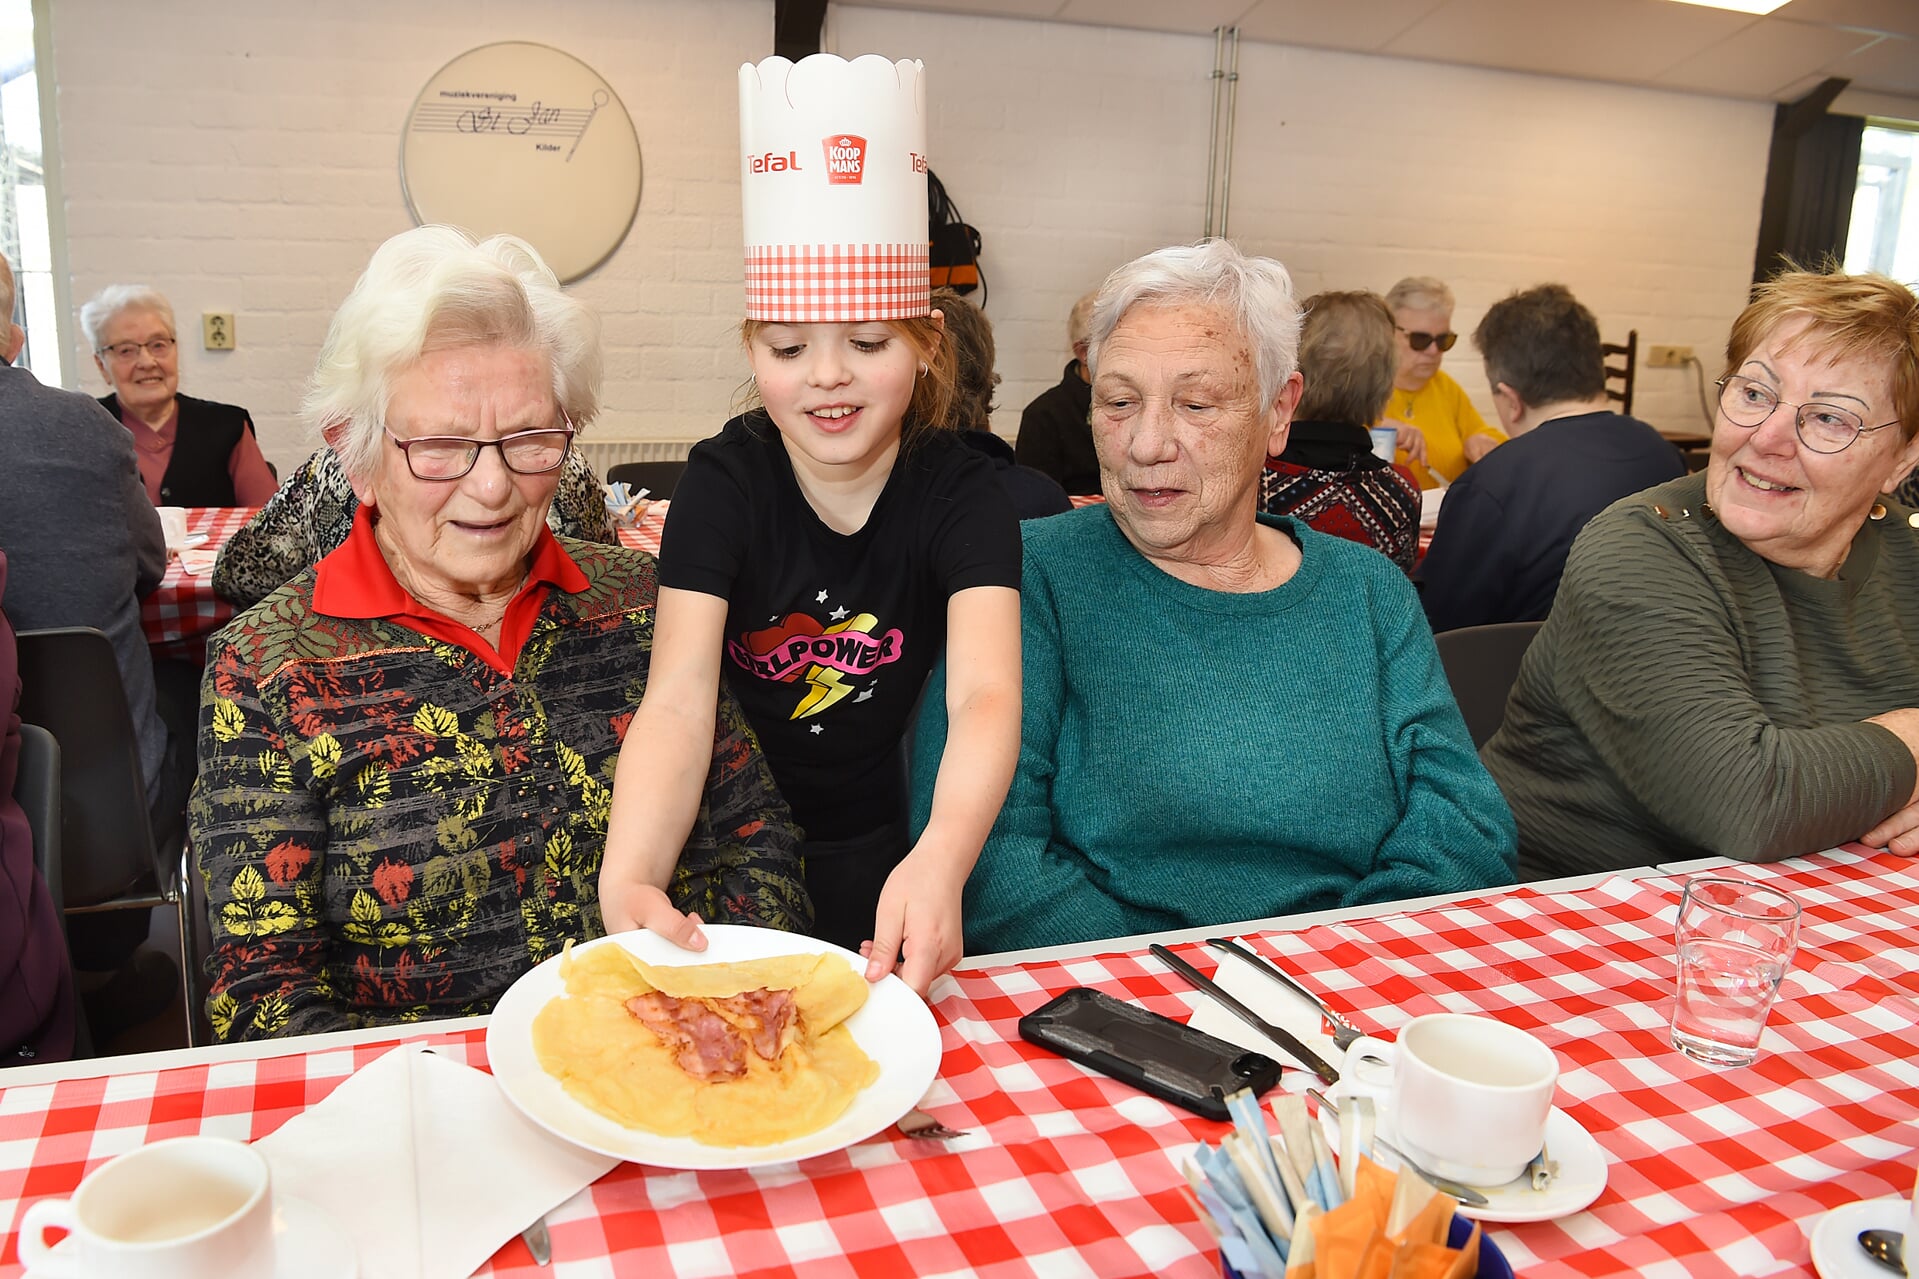 Stien Geurts-Damen, Maud (10, uit groep 7), Froukje Wagner-Adema en Mientje Mulling-Keurentjes, alle drie uit Kilder, genieten van de pannenkoekenlunch.